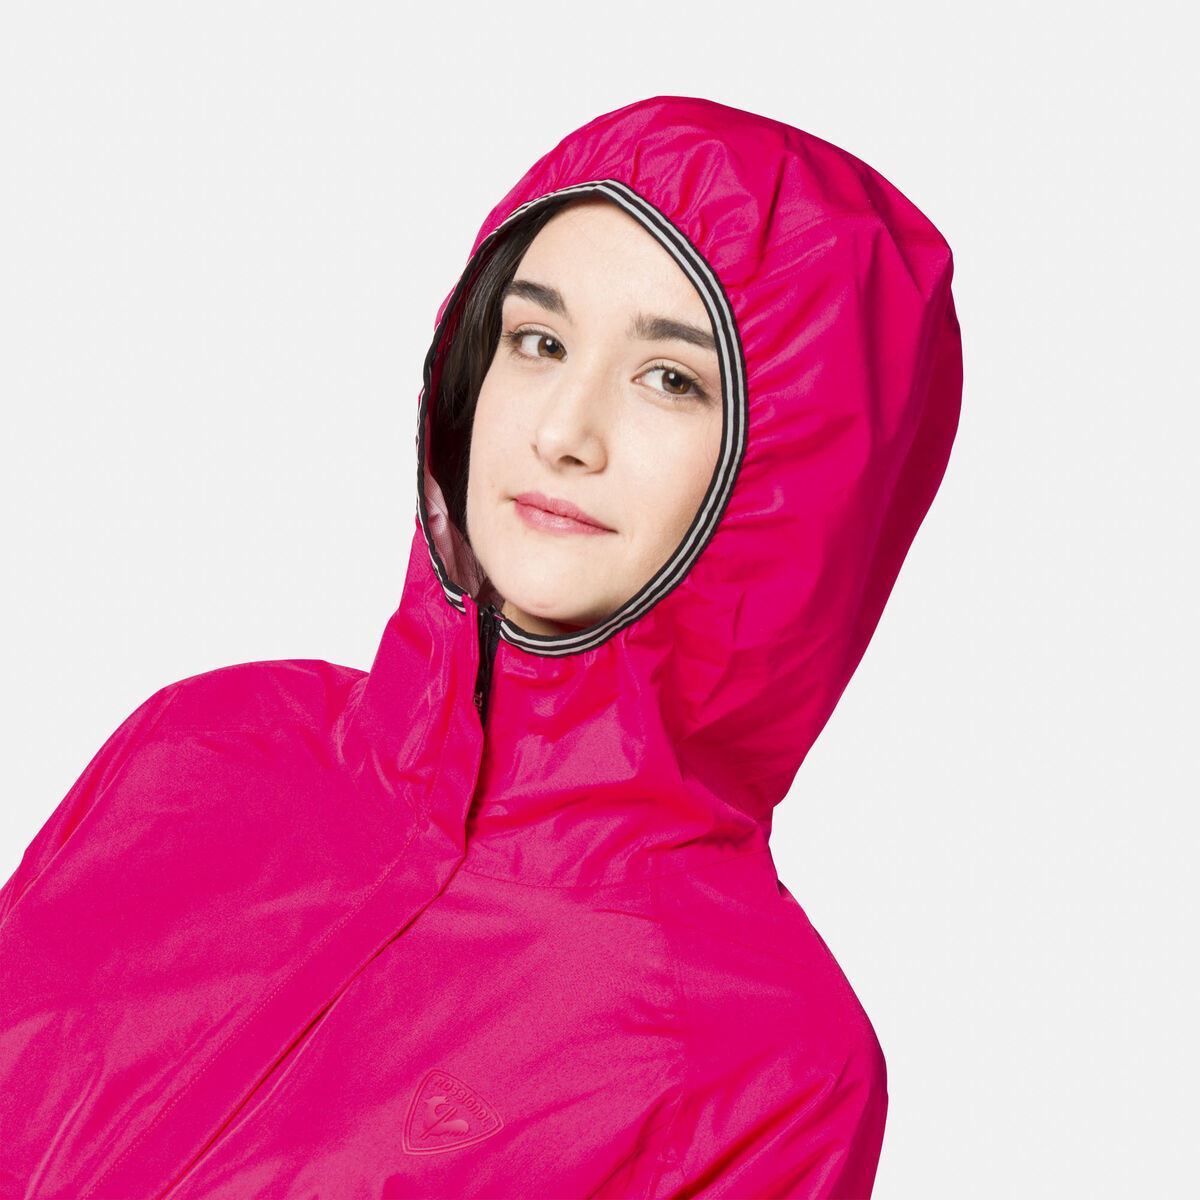 Rossignol Women's Active Rain Jacket pinkpurple